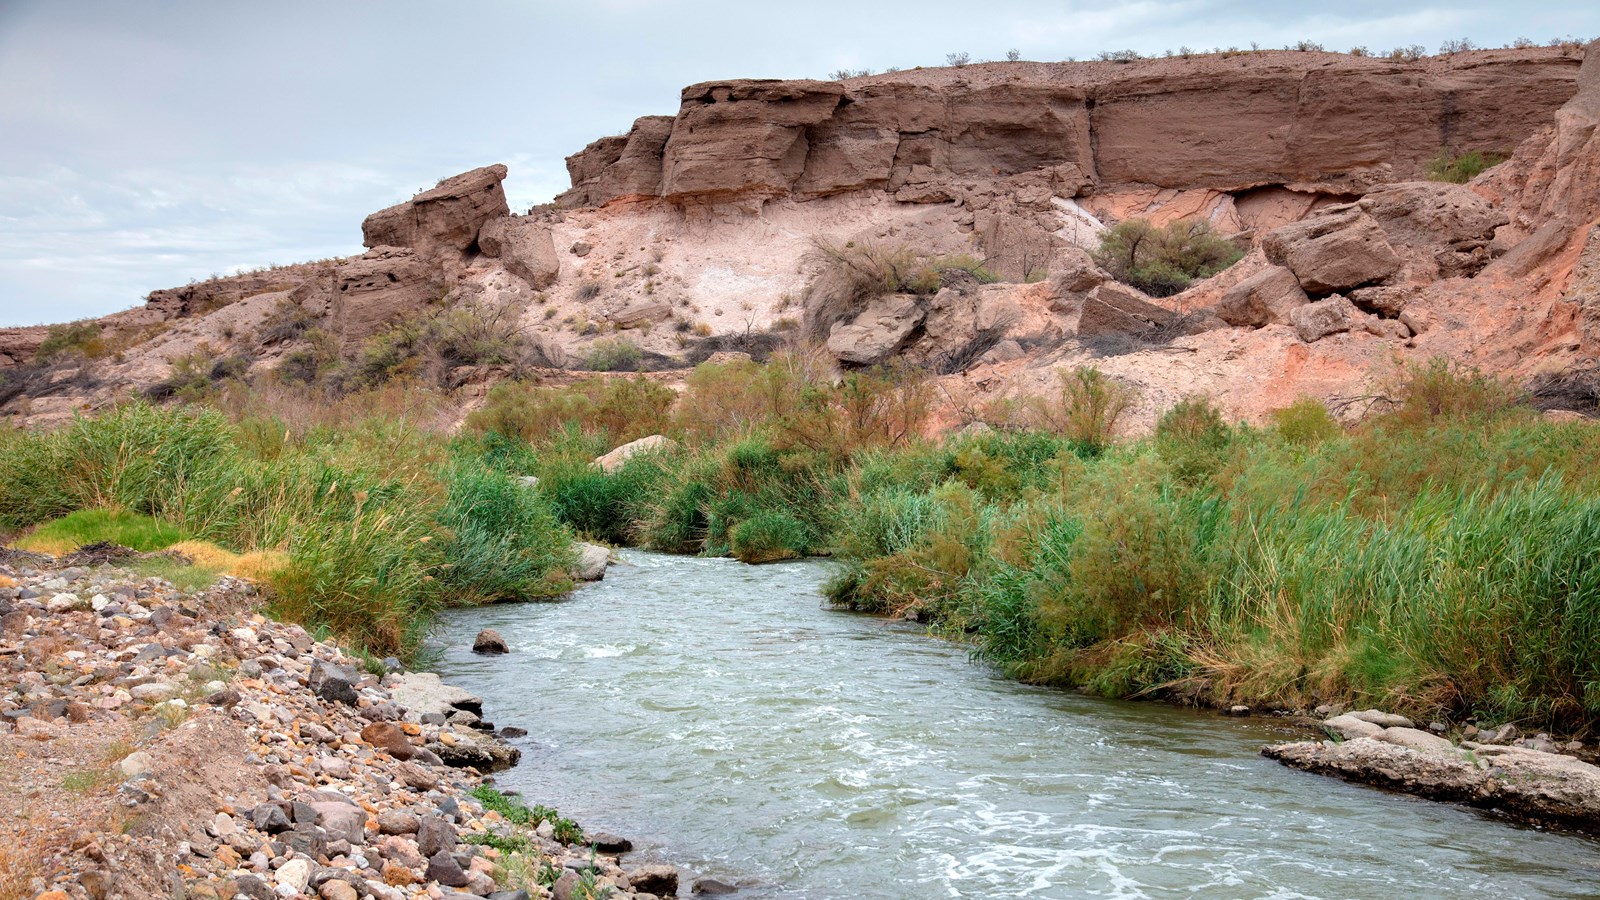 Winding river through desert vegetation. 